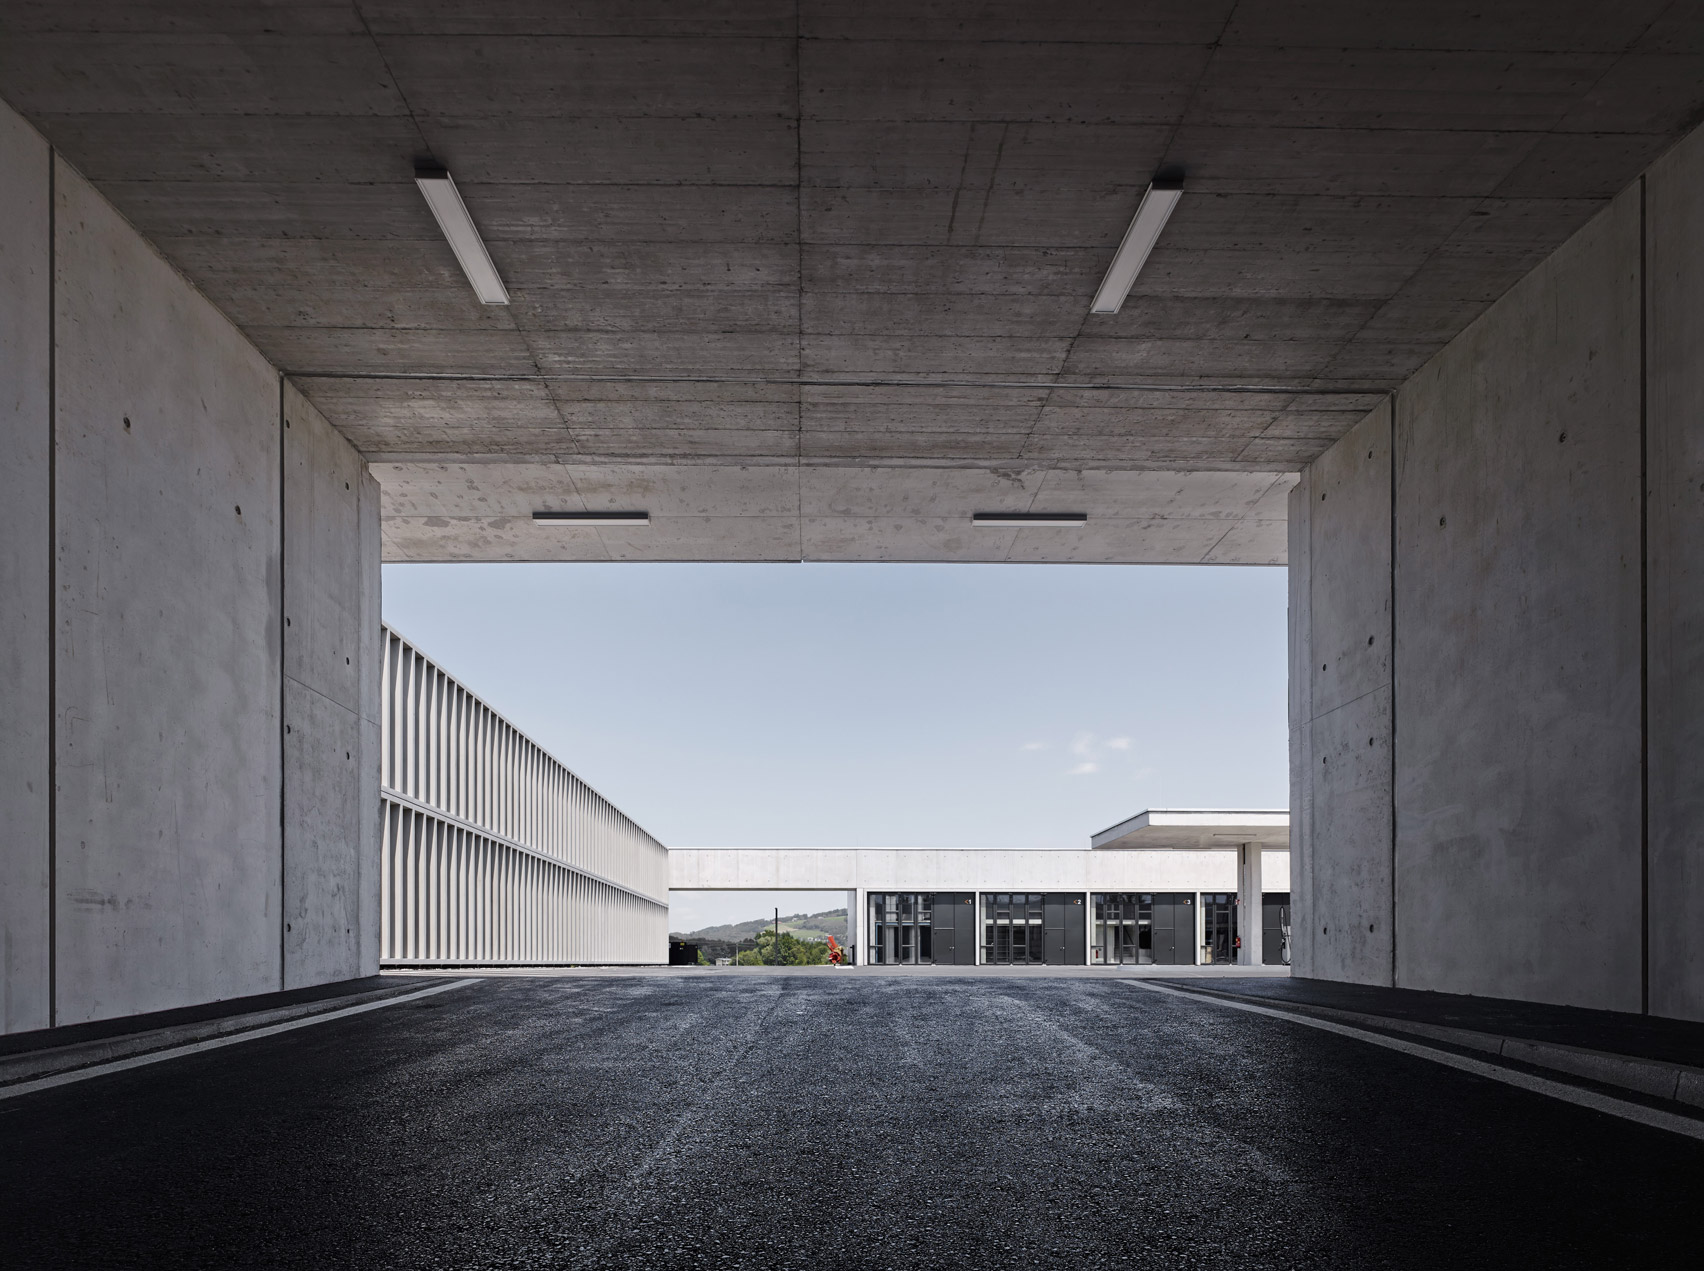 Motorway Maintenance Centre Salzburg by Marte.Marte Architects